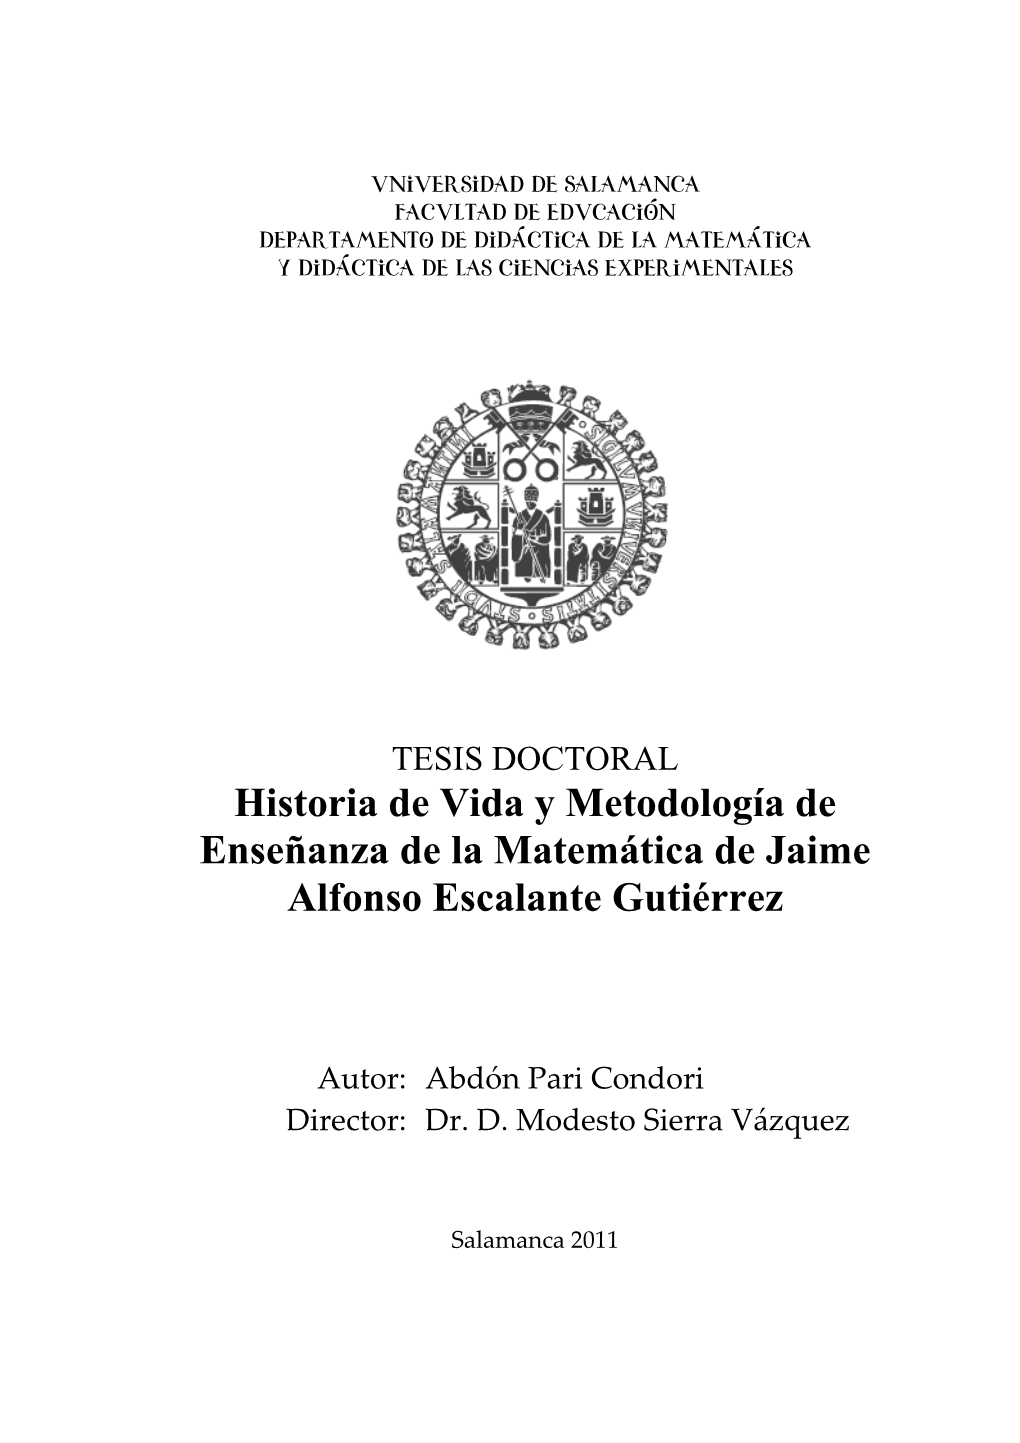 Historia De Vida Y Metodología De Enseñanza De La Matemática De Jaime Alfonso Escalante Gutiérrez